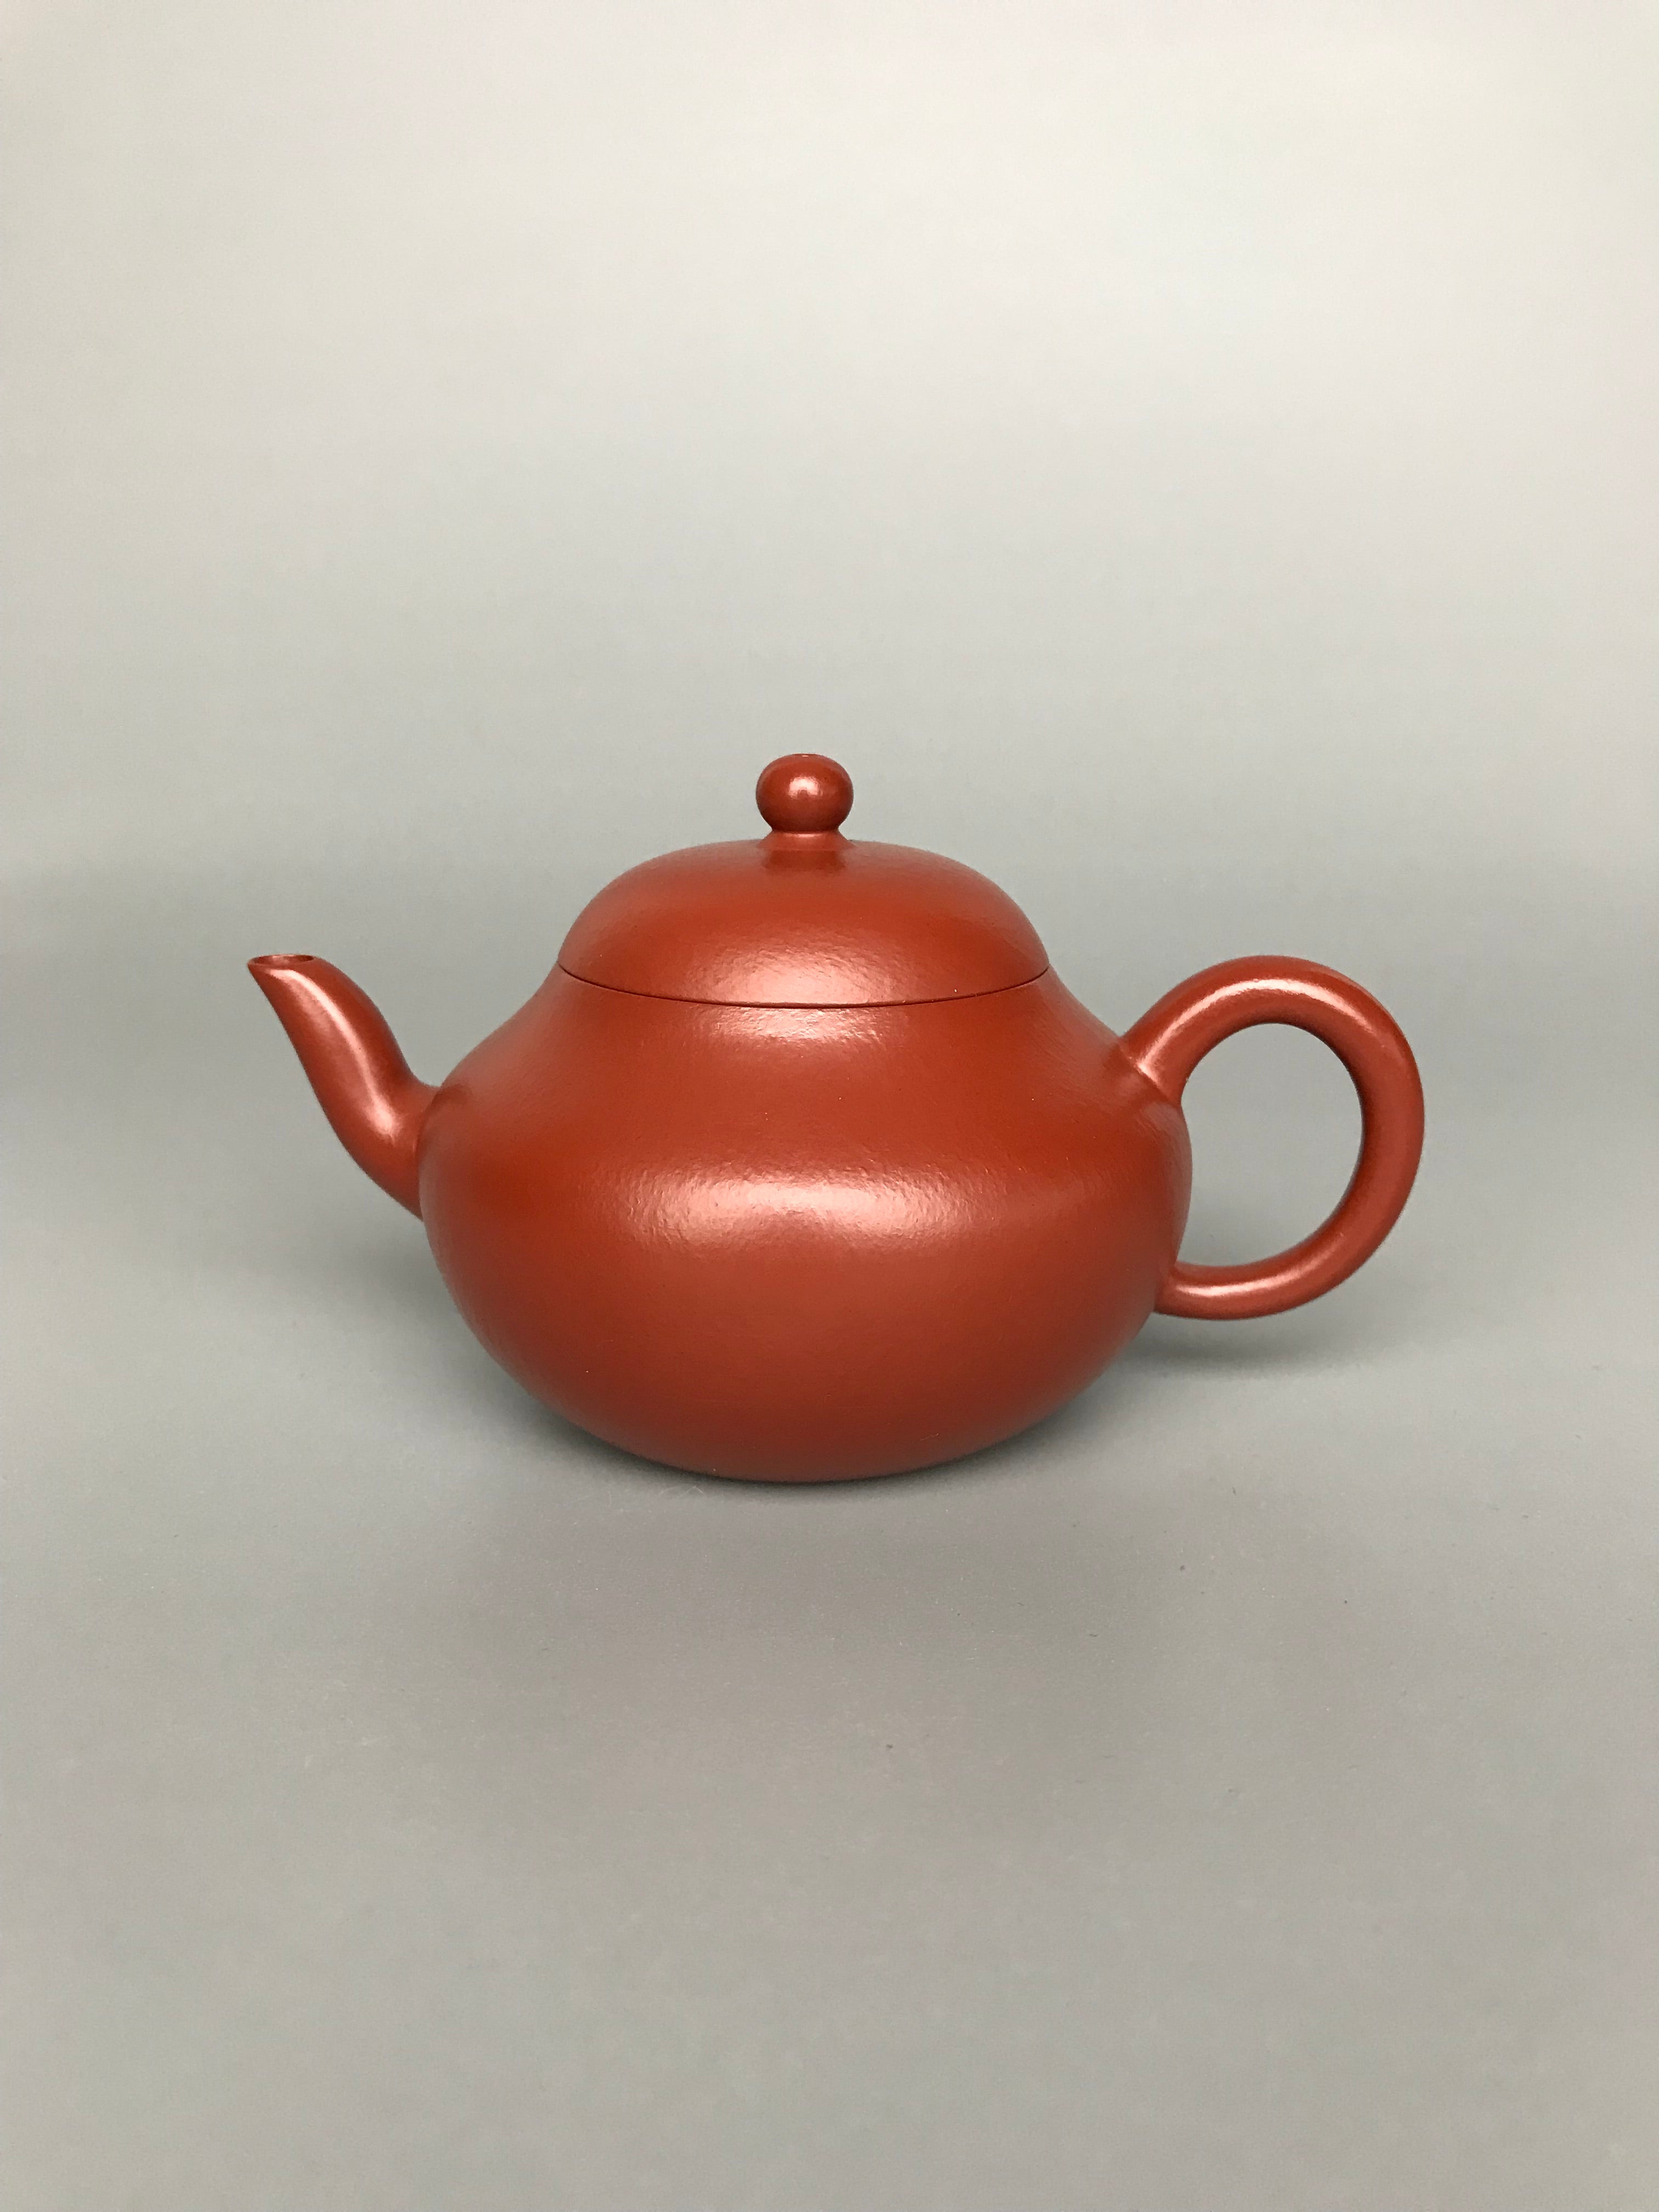 Siyutao teapot the Li Xing full handcraft 150ml yixing teapot